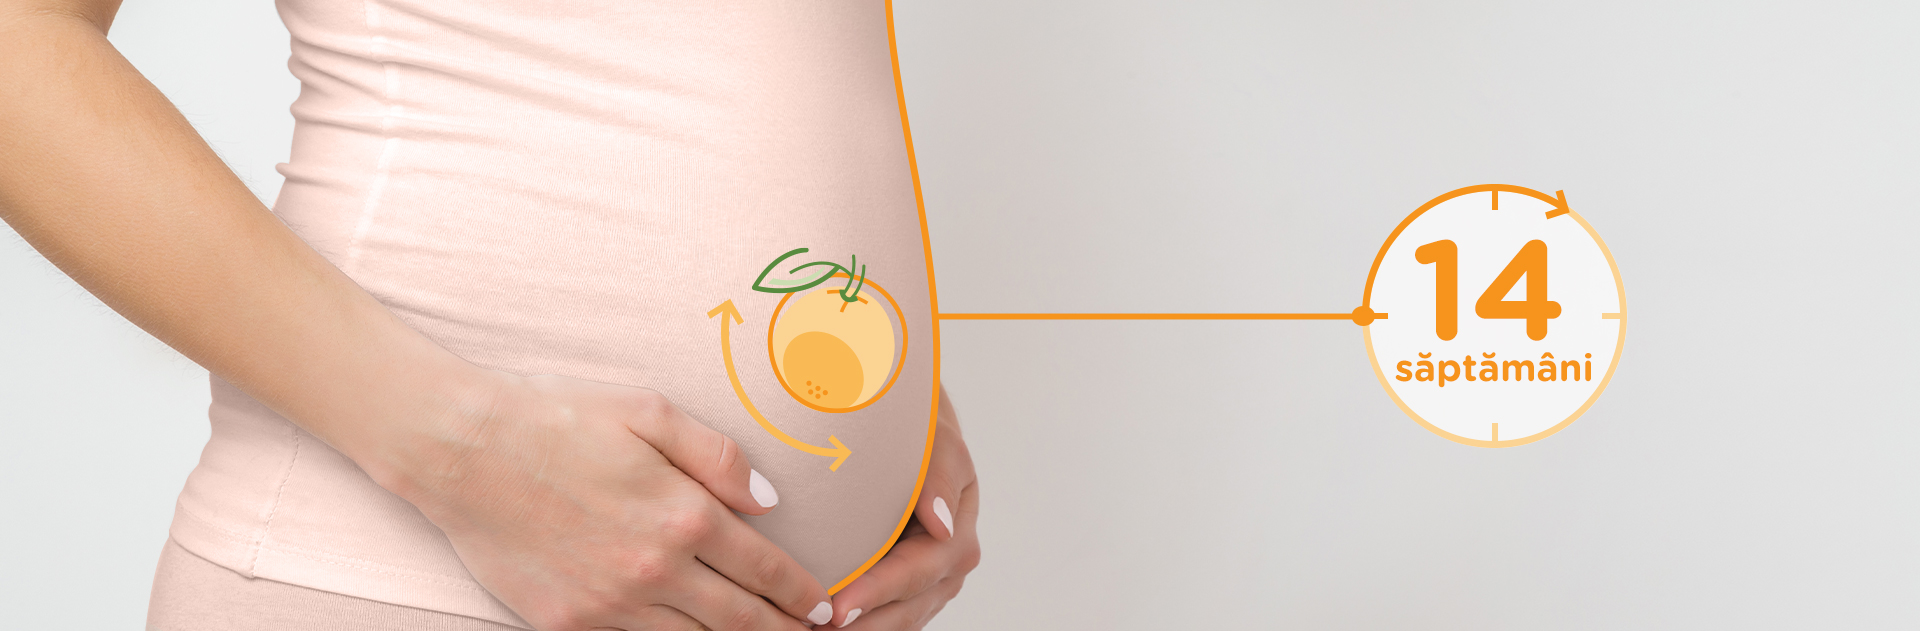 Bebelusul in Saptamana 14 de sarcina fruct: portocala